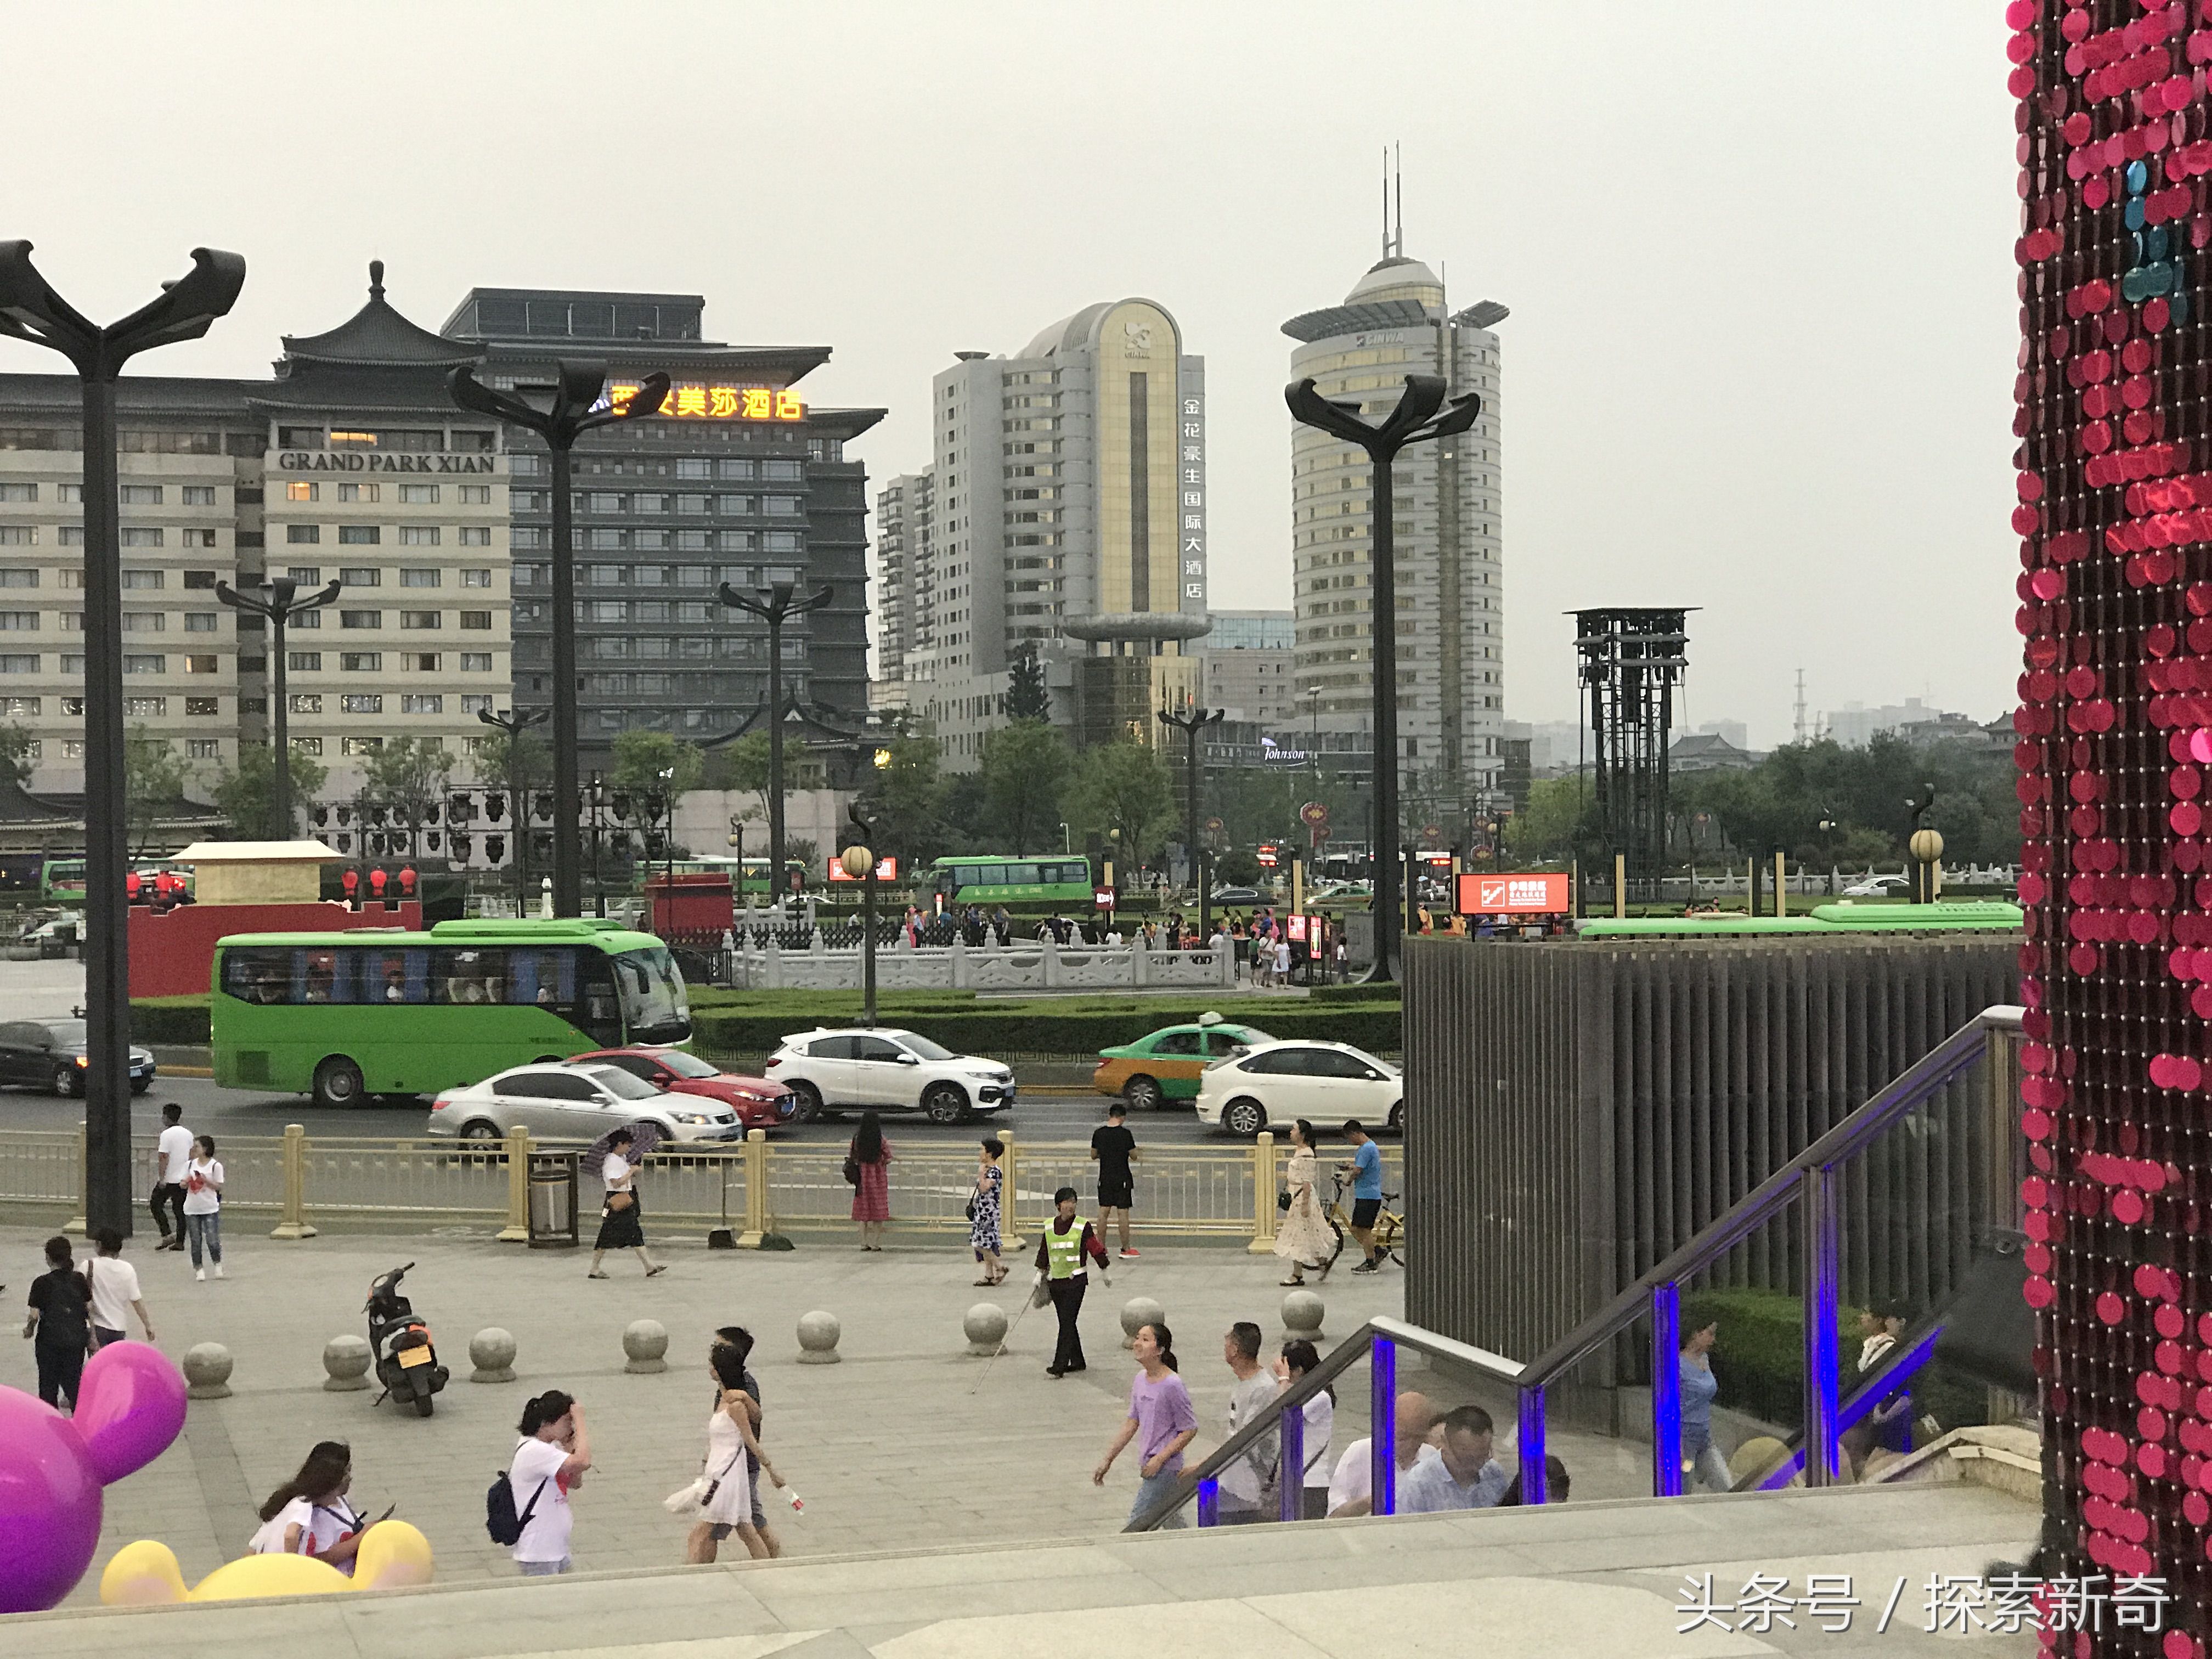 三大高端百货商场齐聚,如今西安南门堪比上海